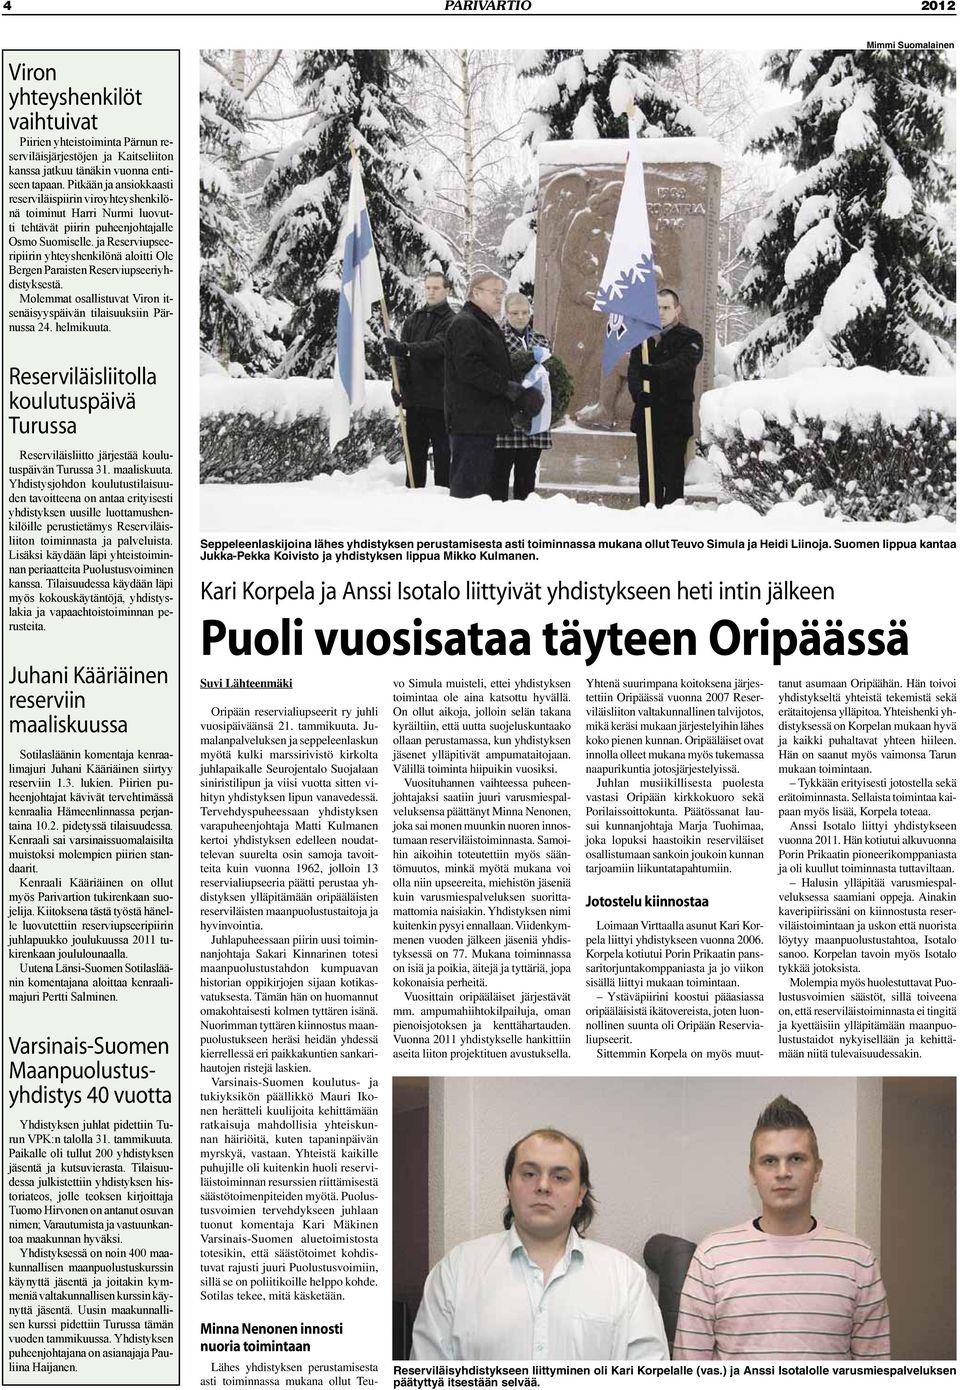 ja Reserviupseeripiirin yhteyshenkilönä aloitti Ole Bergen Paraisten Reserviupseeriyhdistyksestä. Molemmat osallistuvat Viron itsenäisyyspäivän tilaisuuksiin Pärnussa 24. helmikuuta.